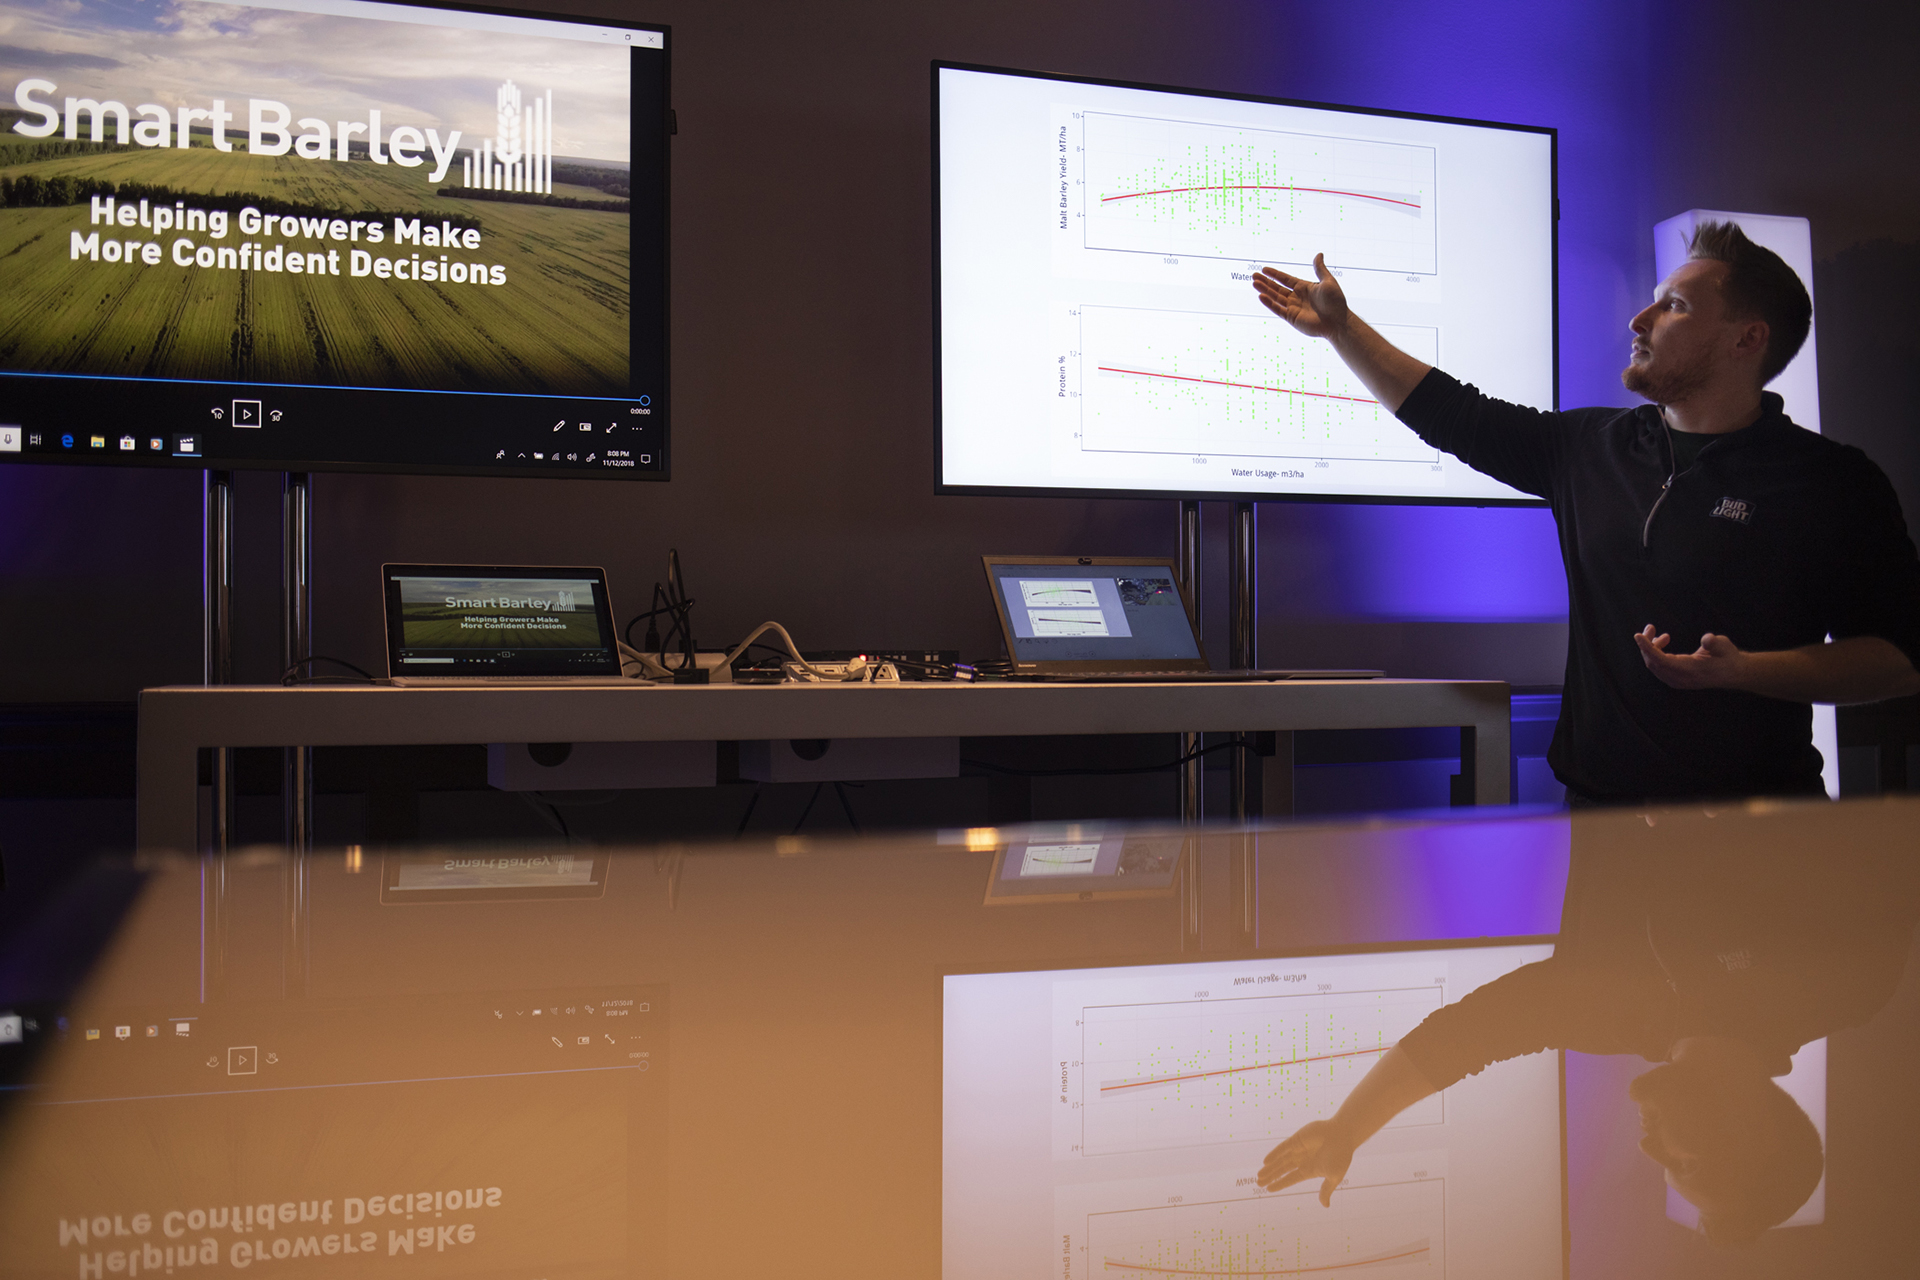 Эндрю Грин, глобальный директор по инновациям в Anheuser-Busch InBev, демонстрирует SmartBarley на Conversations on AI в Сан-Франциско. Фото: John Brecher для Microsoft.